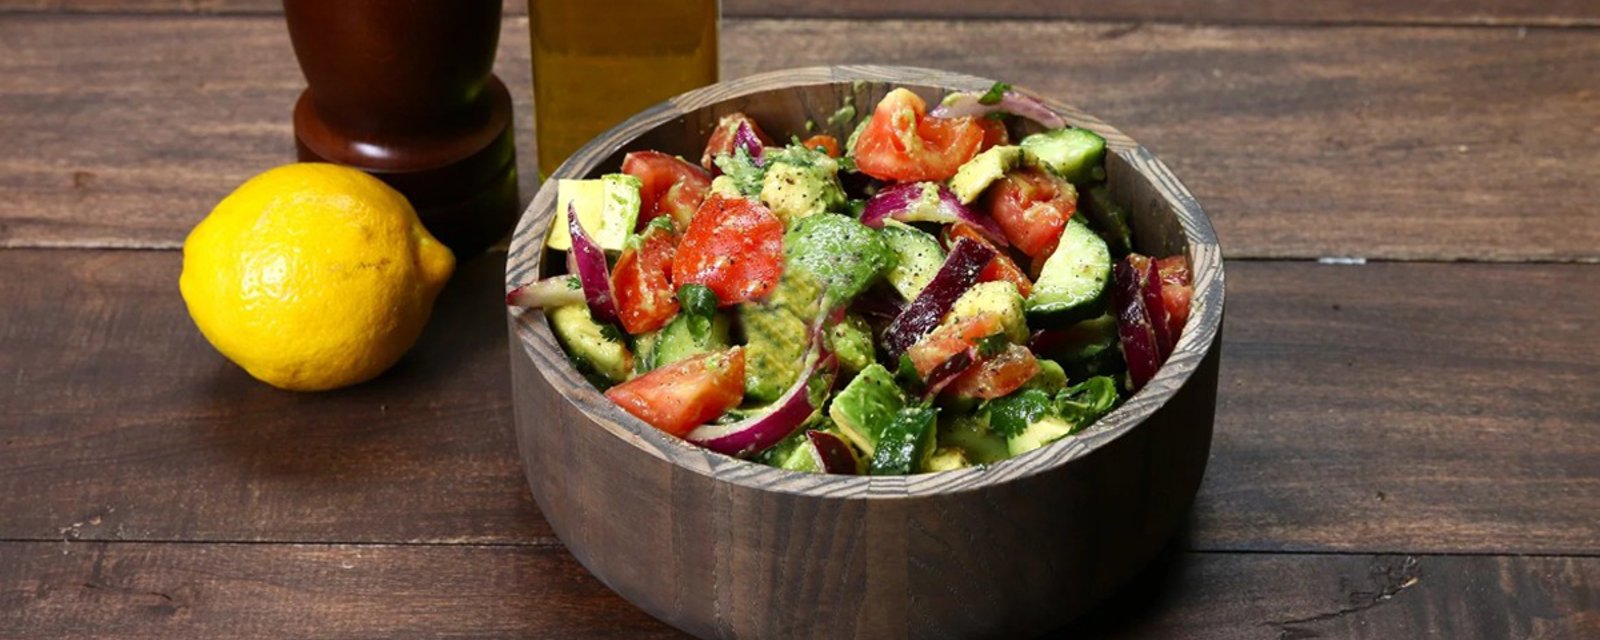 Laissez-vous charmer pour cette salade d'avocat, de concombre et de tomates... elle est INCROYABLEMENT délicieuse!